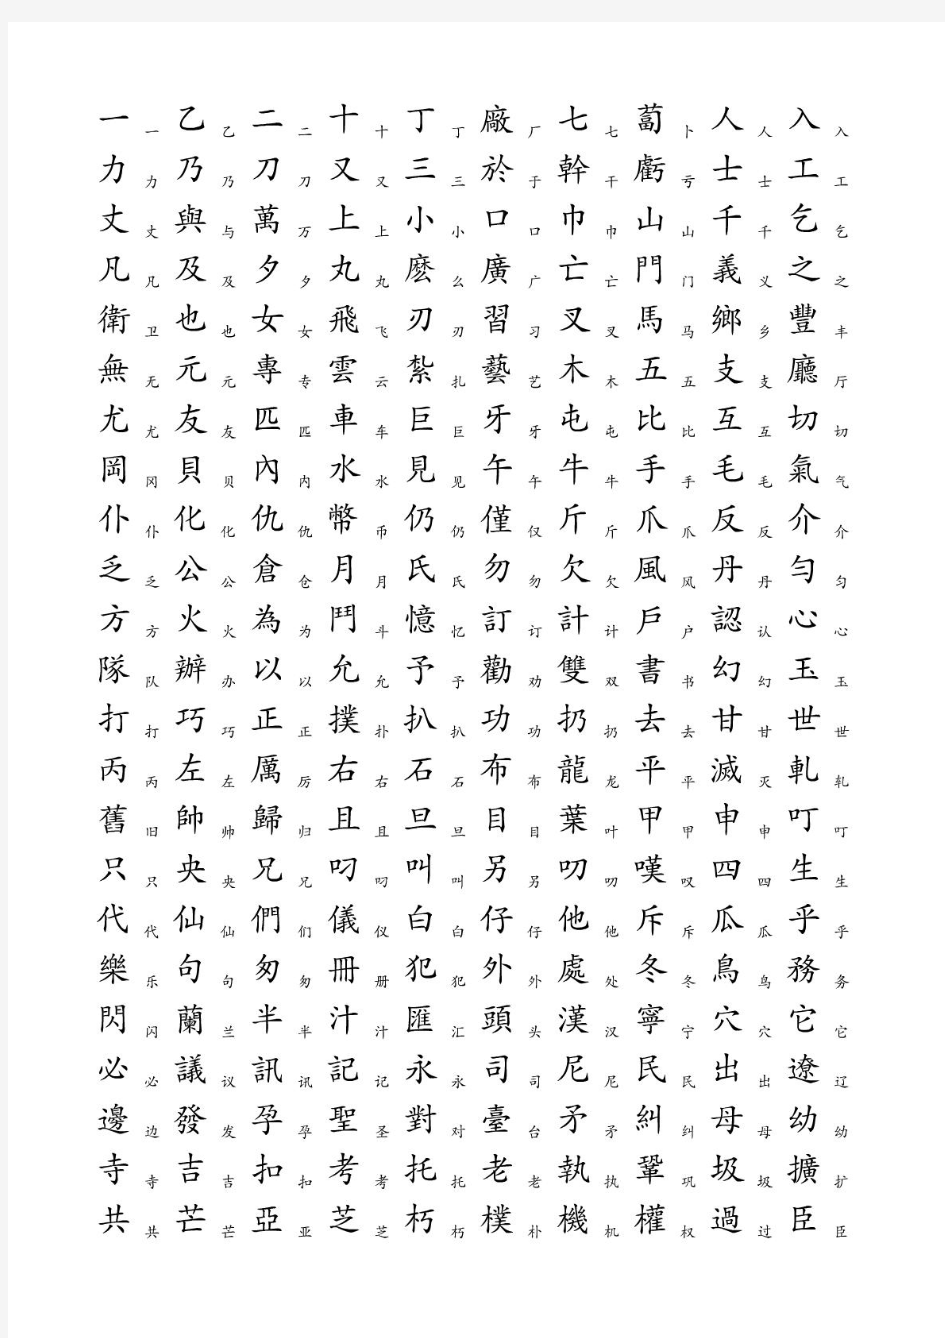 3500个常用汉字简繁对照表